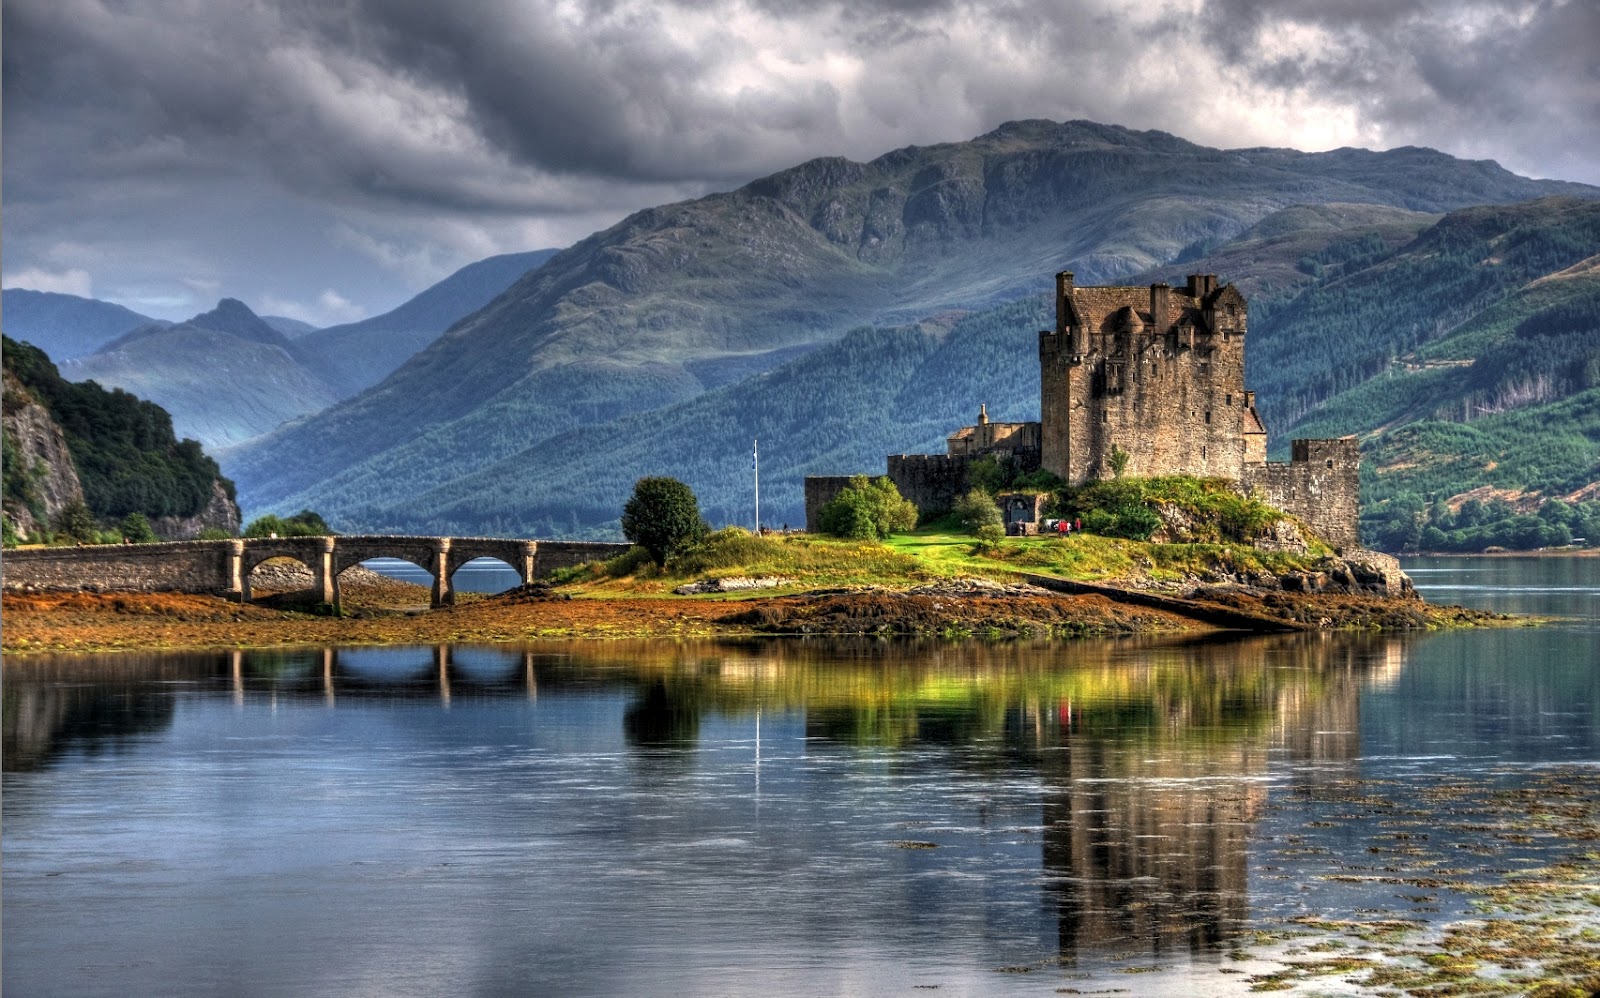 Come join us as we explore bonnie Scotland!